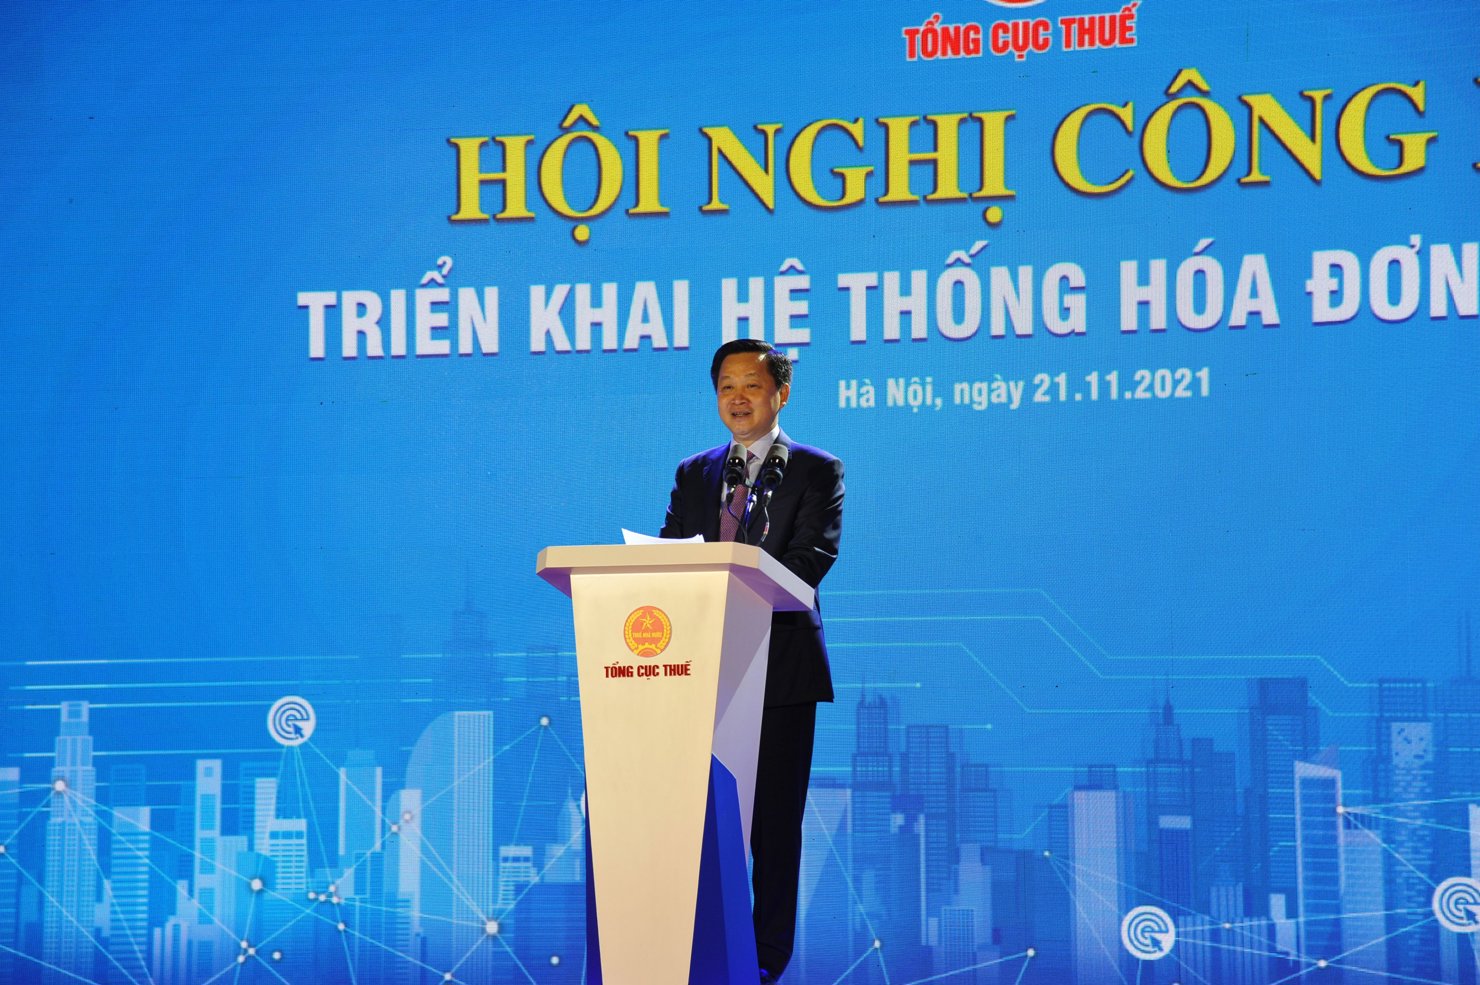 Phó Thủ tướng Chính phủ Lê Minh Khái phát biểu chỉ đạo Hội nghị trực tuyến toàn quốc công bố triển khai Hệ thống hóa đơn điện tử.